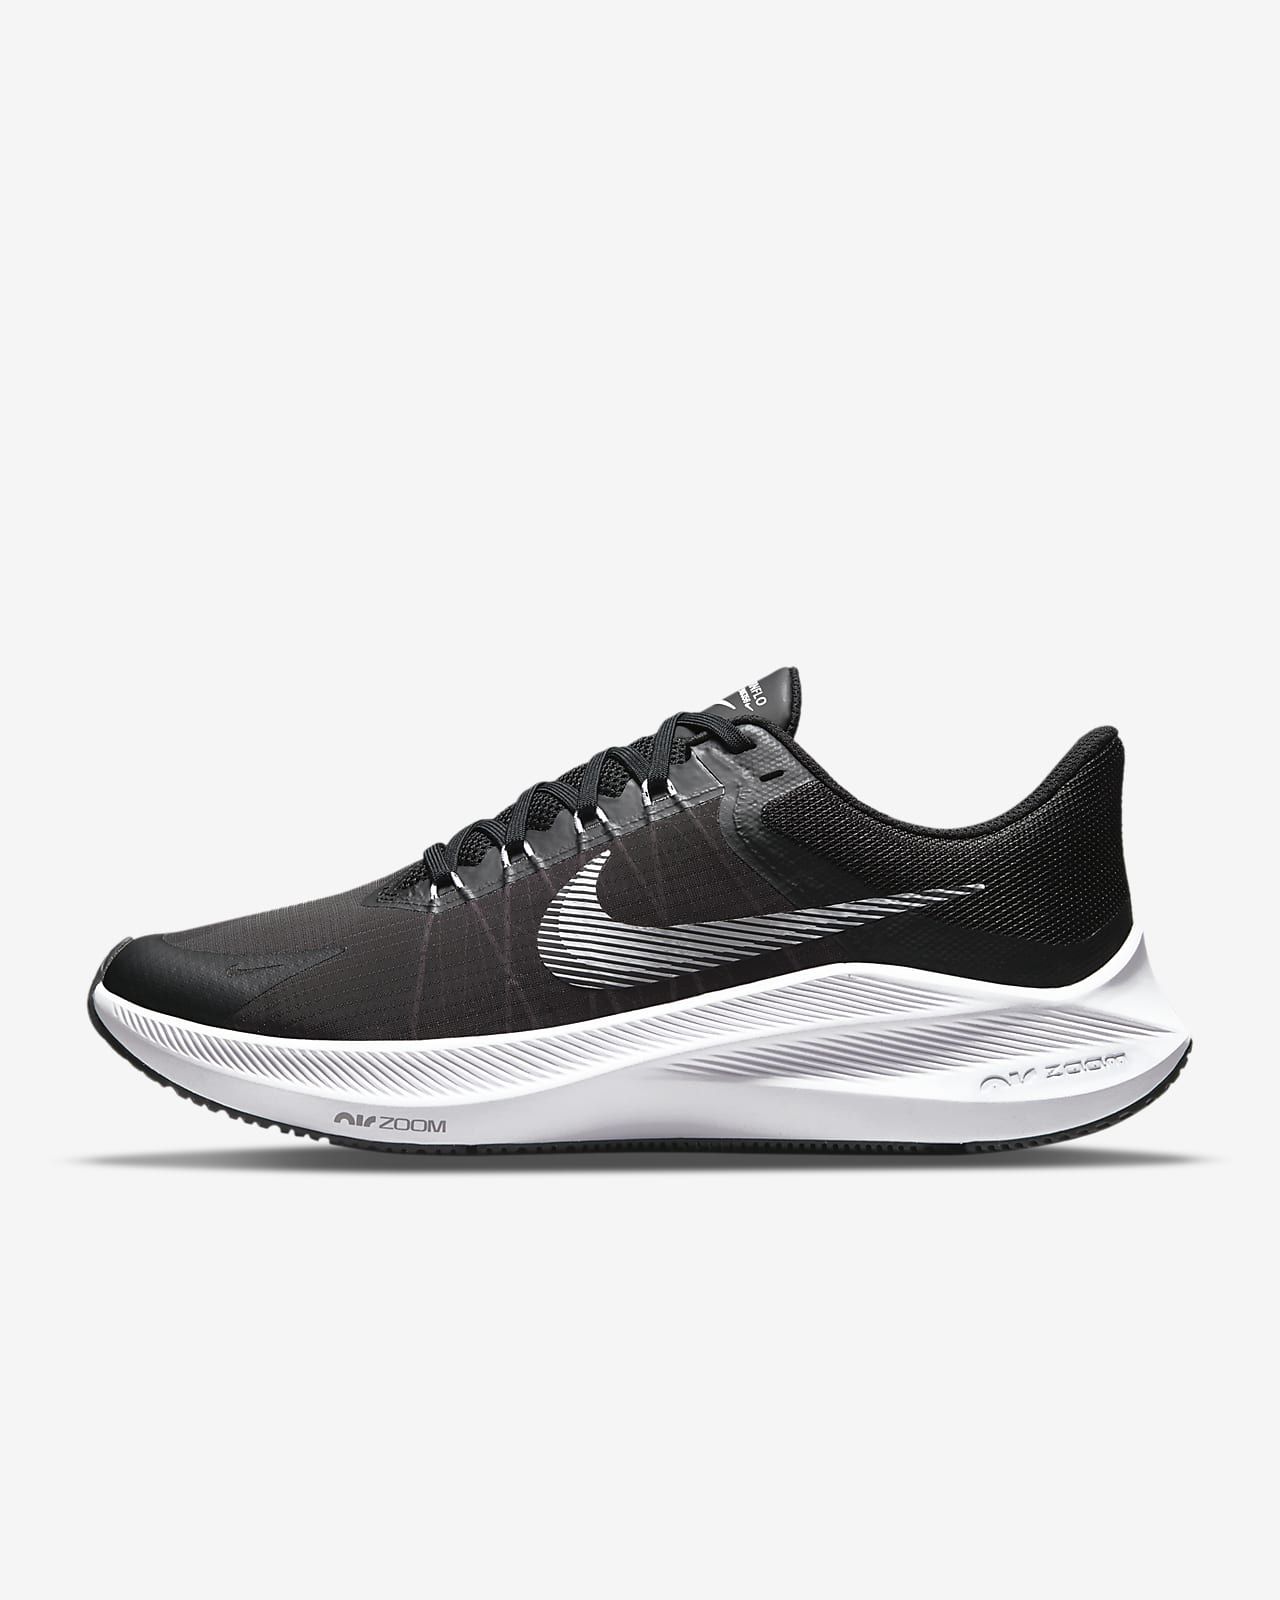 Men's Road Running Shoes | Nike (UK)